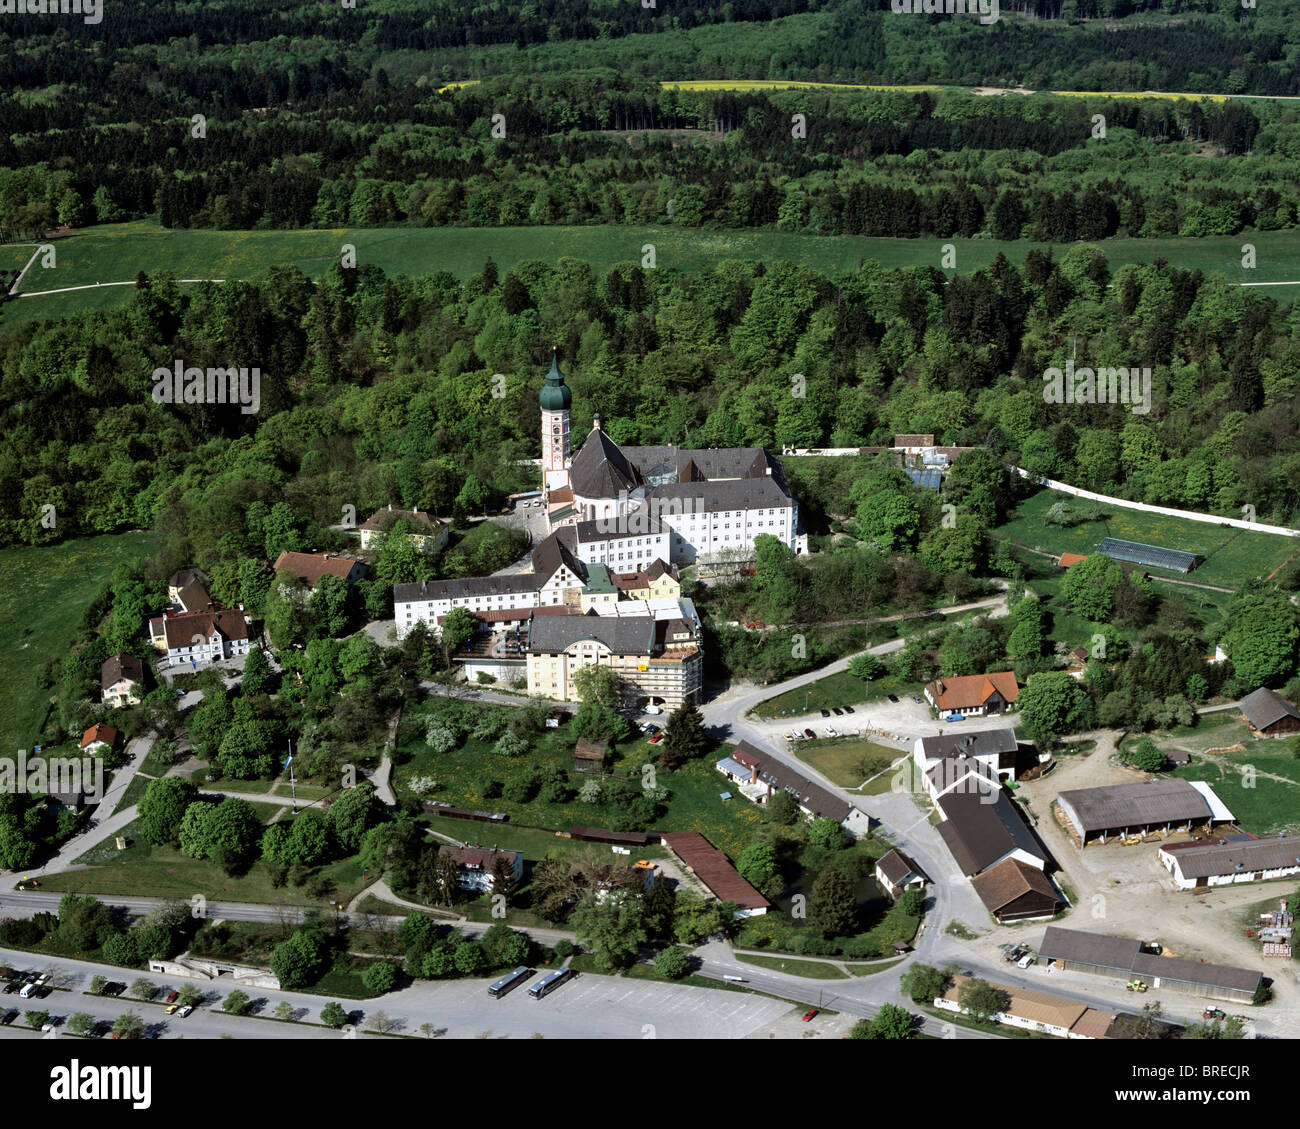 Kloster Andechs monasterio, lugar de peregrinación, priorato Benedictino Alta Baviera, Alemania, Europa, vista aérea Foto de stock